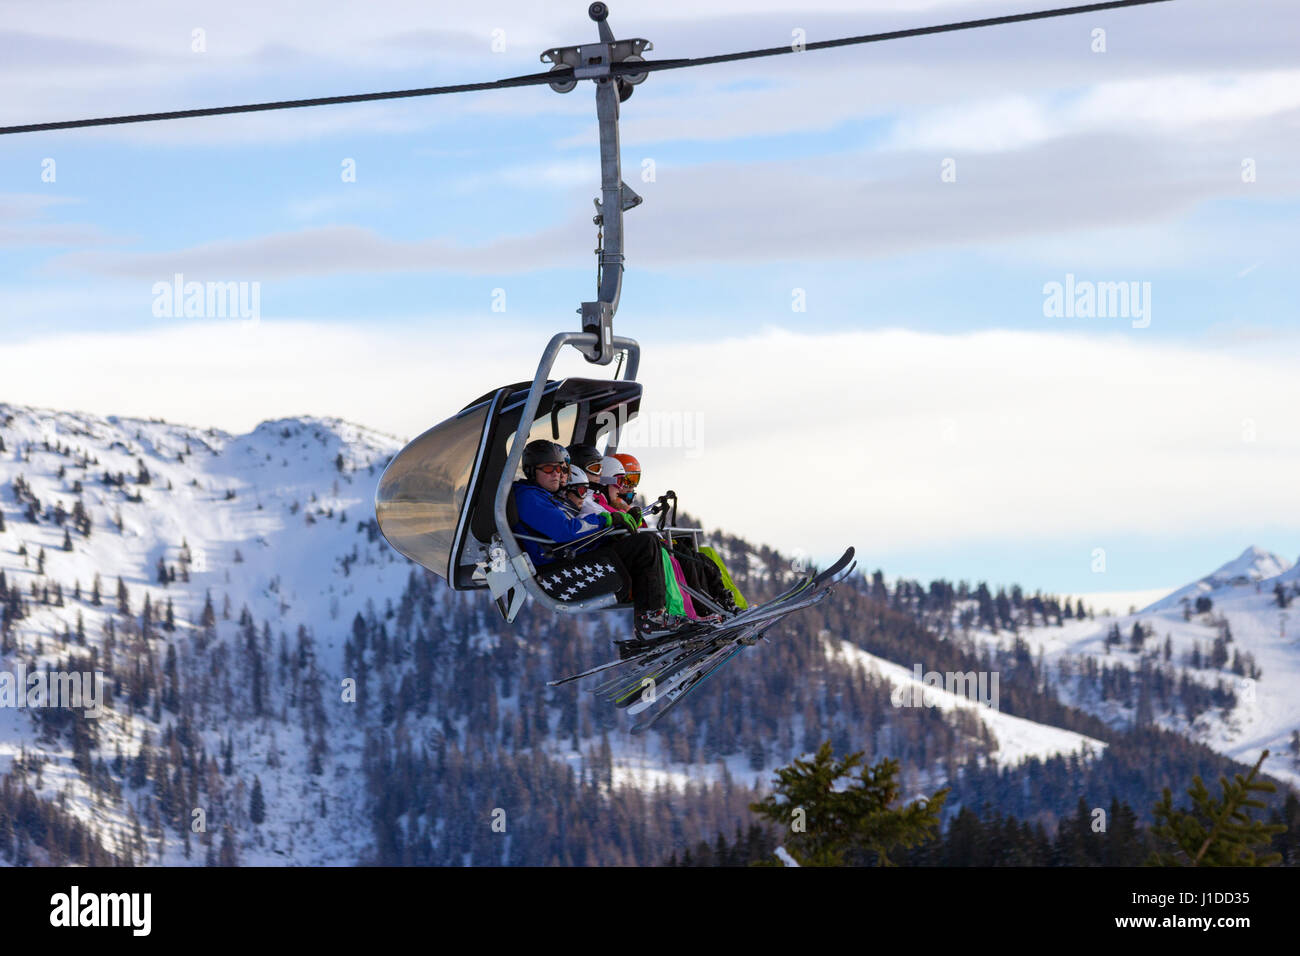 FLACHAU, AUTRICHE - DEC 27, 2012 Skieurs : sur un téléski à une piste à l'Austrial Alpes. Ces pistes sont une partie de l'Armada de ski, le plus grand réseau o Banque D'Images